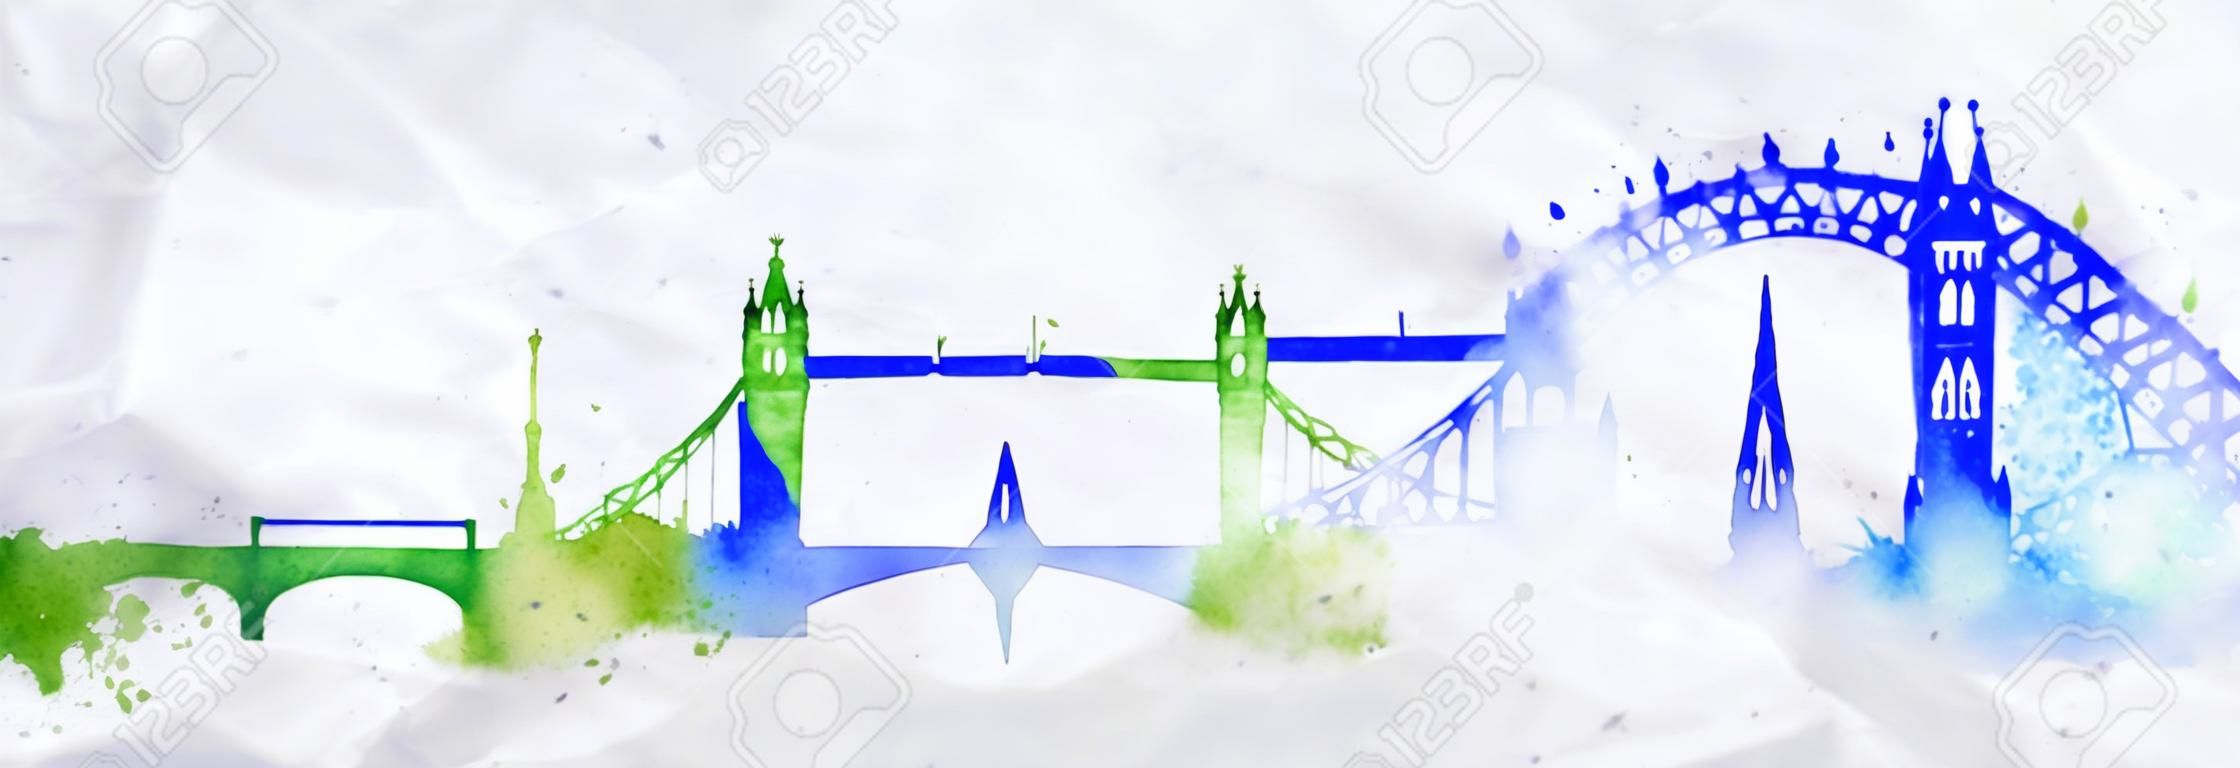 Silhouette Londres cidade pintada com respingos de gotas de aquarela estrias marcos com cores azul-verde